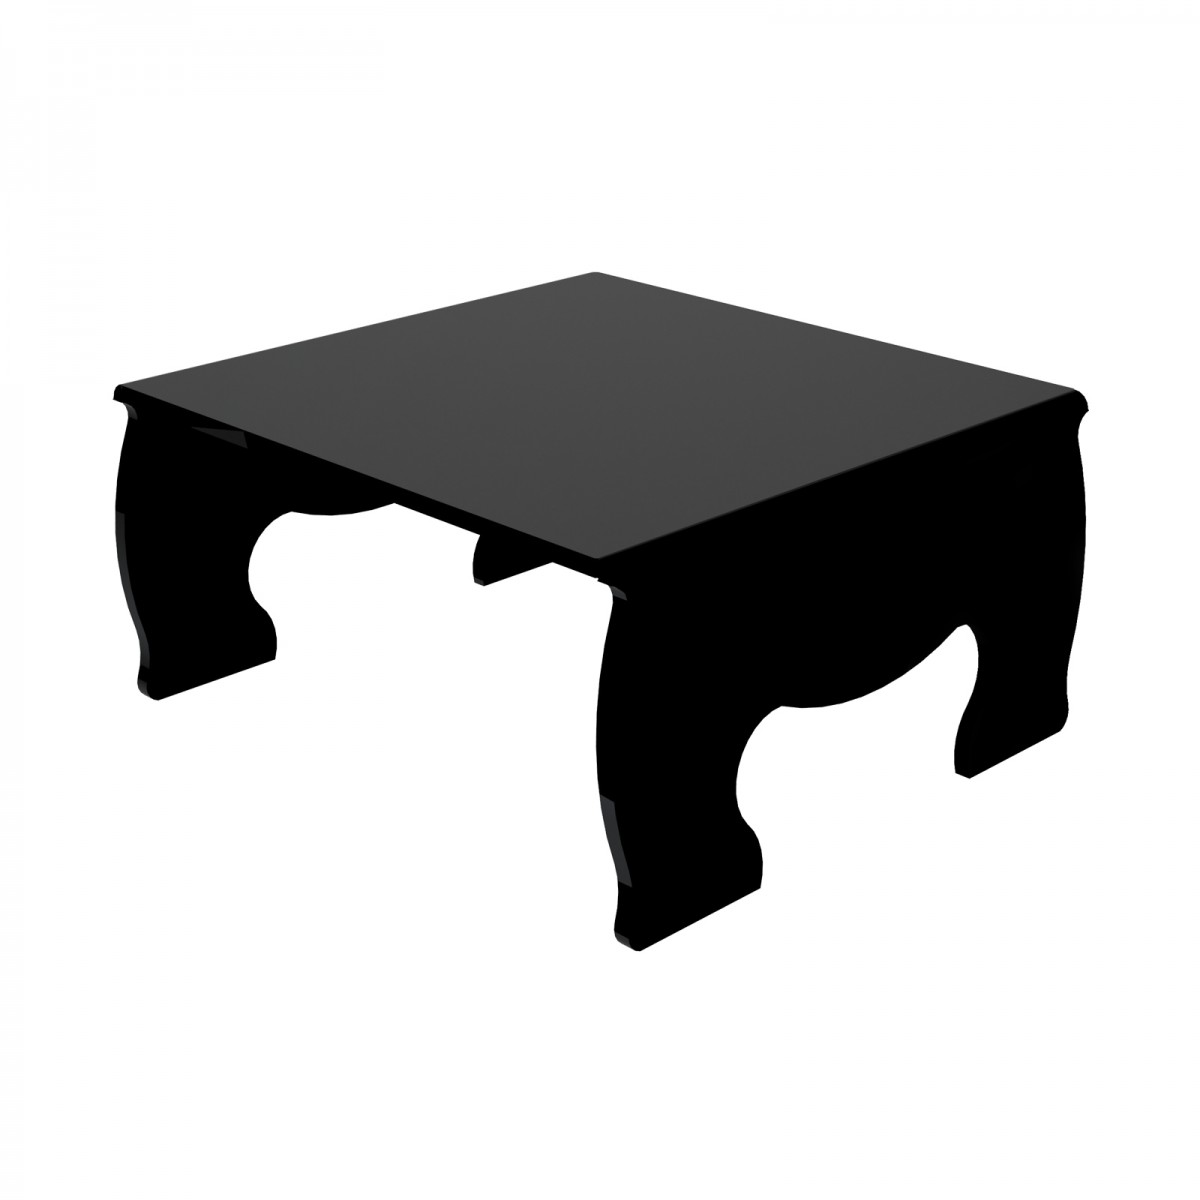 E-621 - Alzatina/Tavolino multiuso in plexiglass nero - Spessore 5 mm